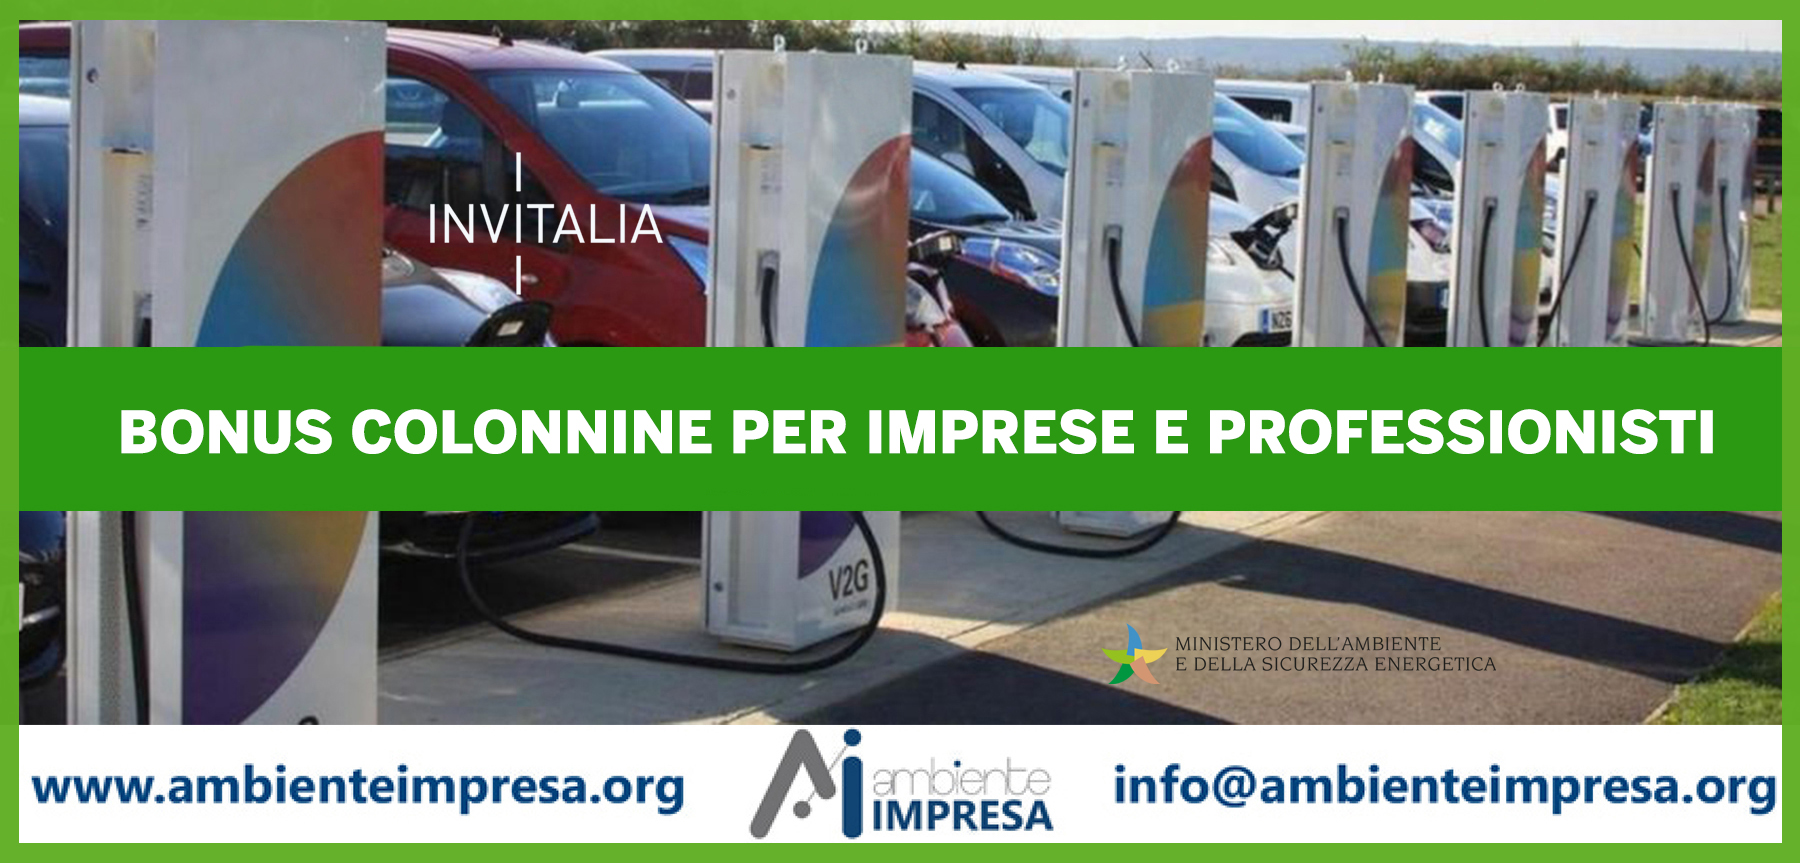 Bonus Colonnine per imprese e professionisti - MASE - INVITALIA - Ambiente Impresa srl - Cagliari